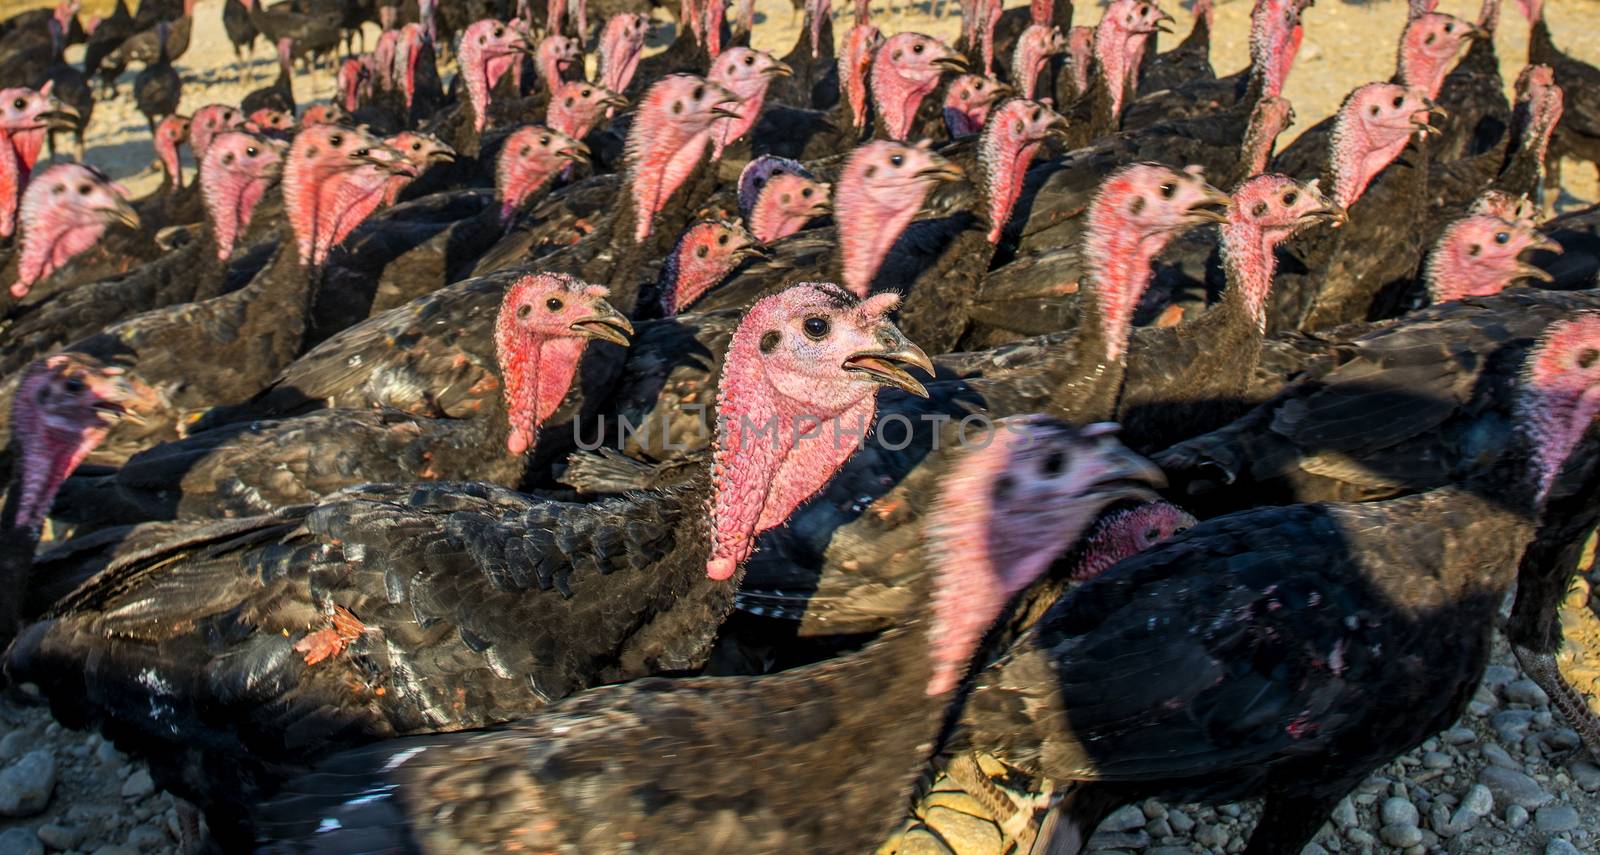 Flock of turkeys being herded through the village